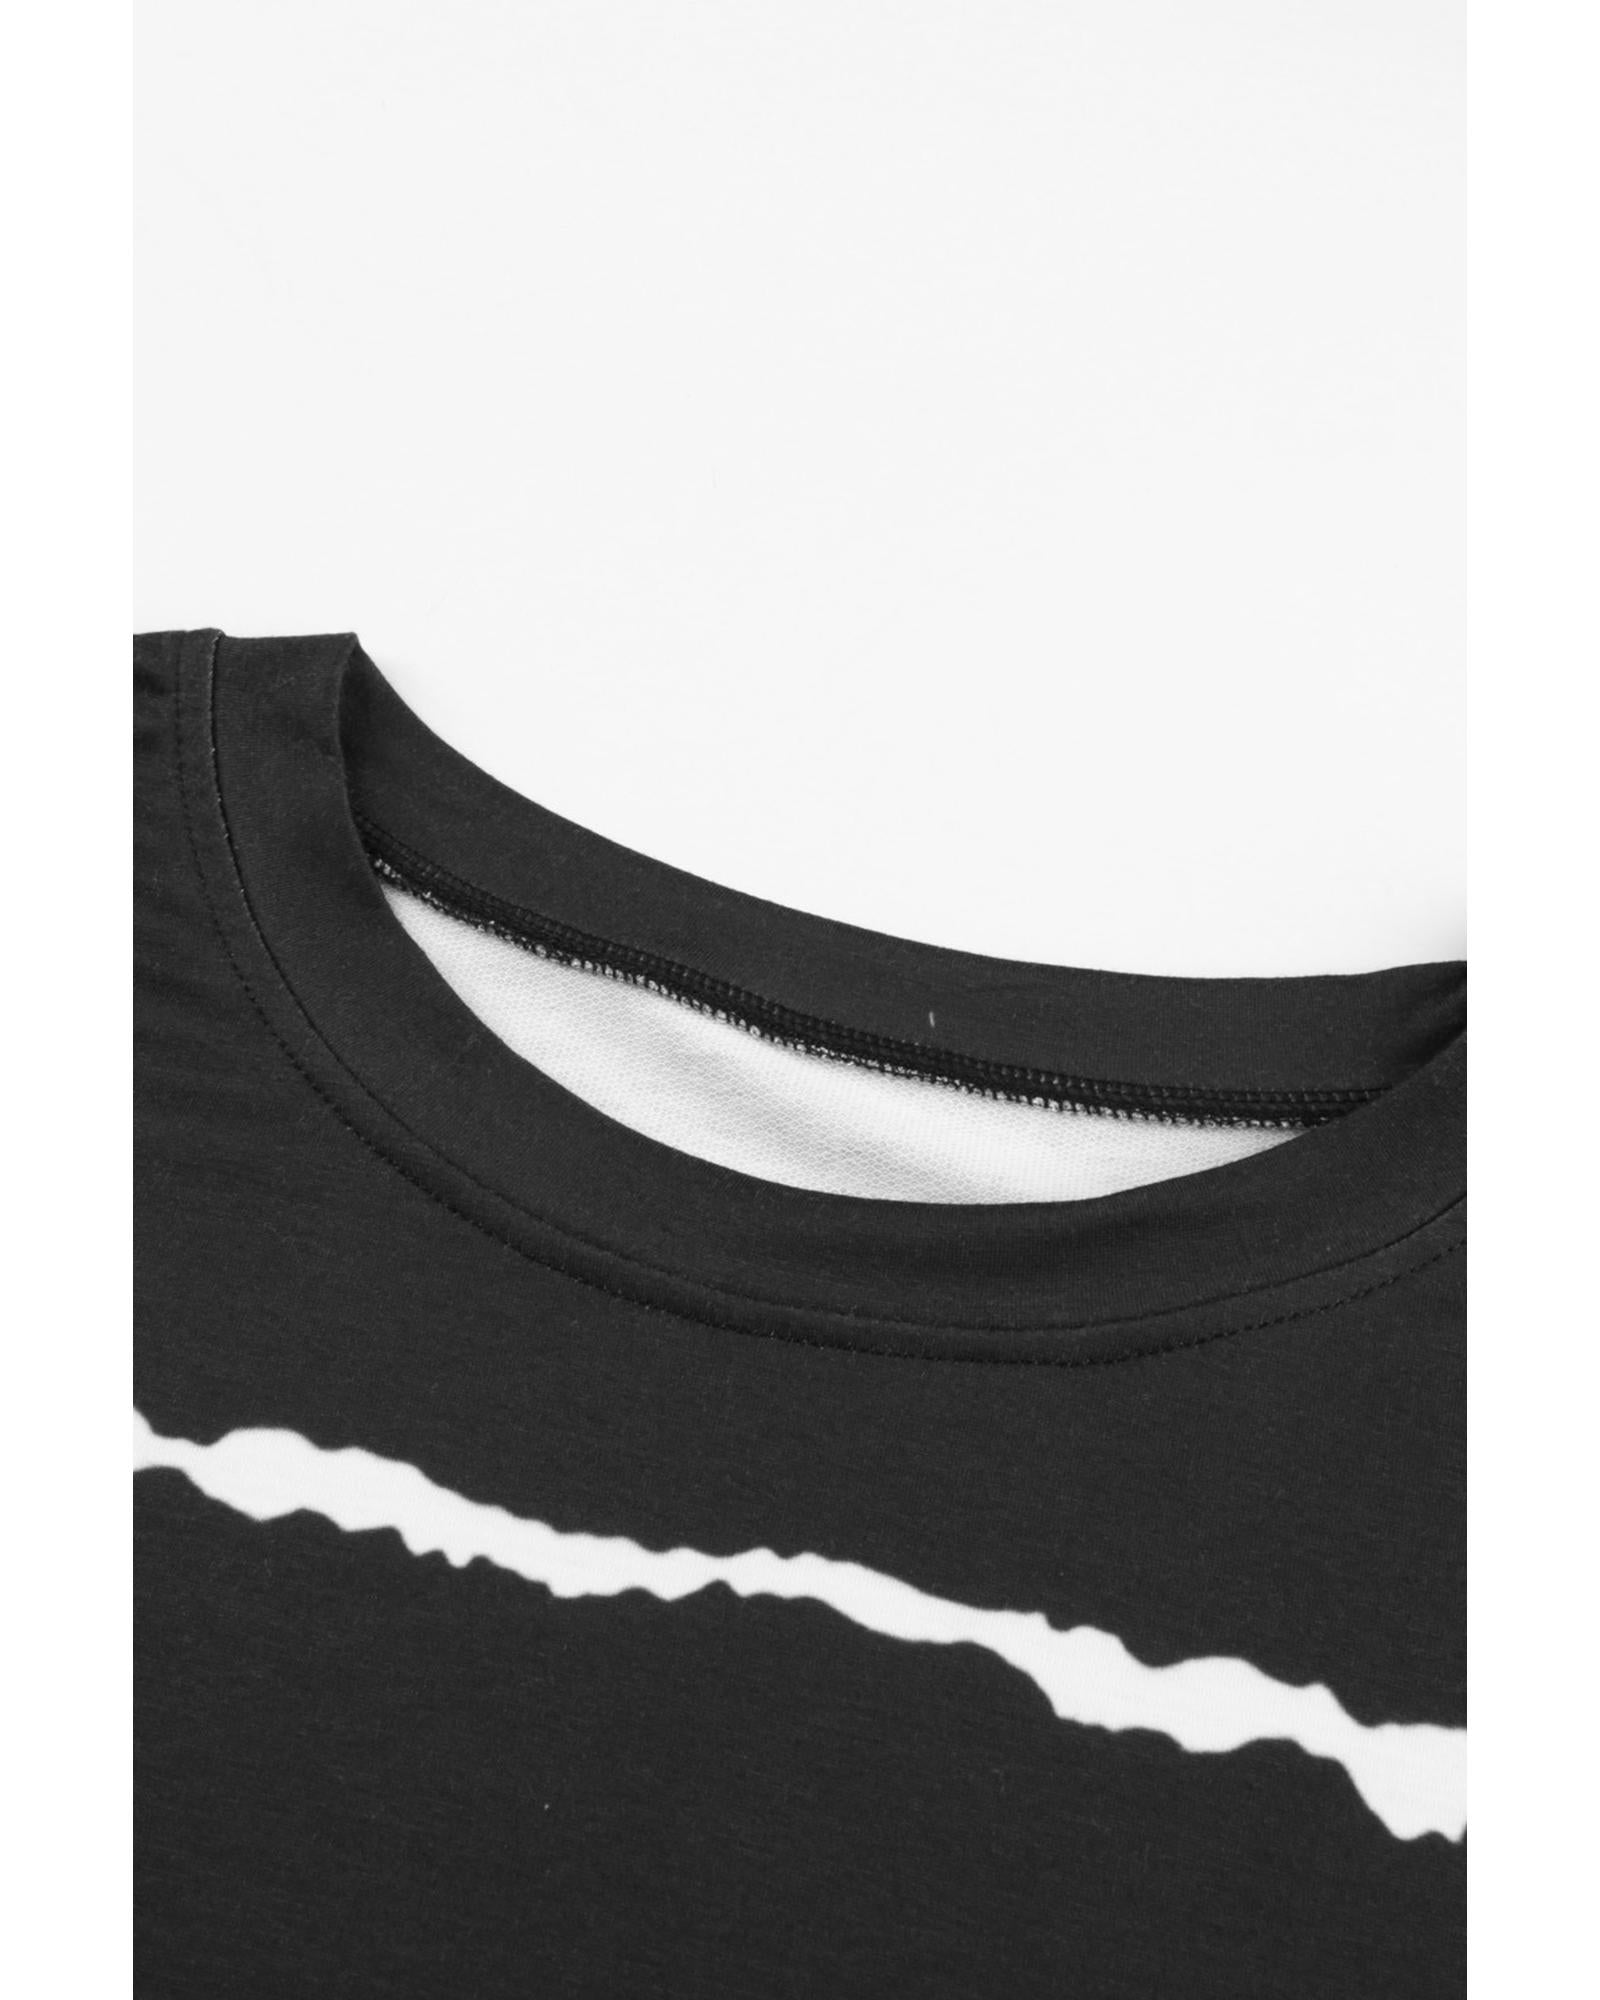 Azura Exchange Abstract Striped Long Sleeve Sweatshirt - S